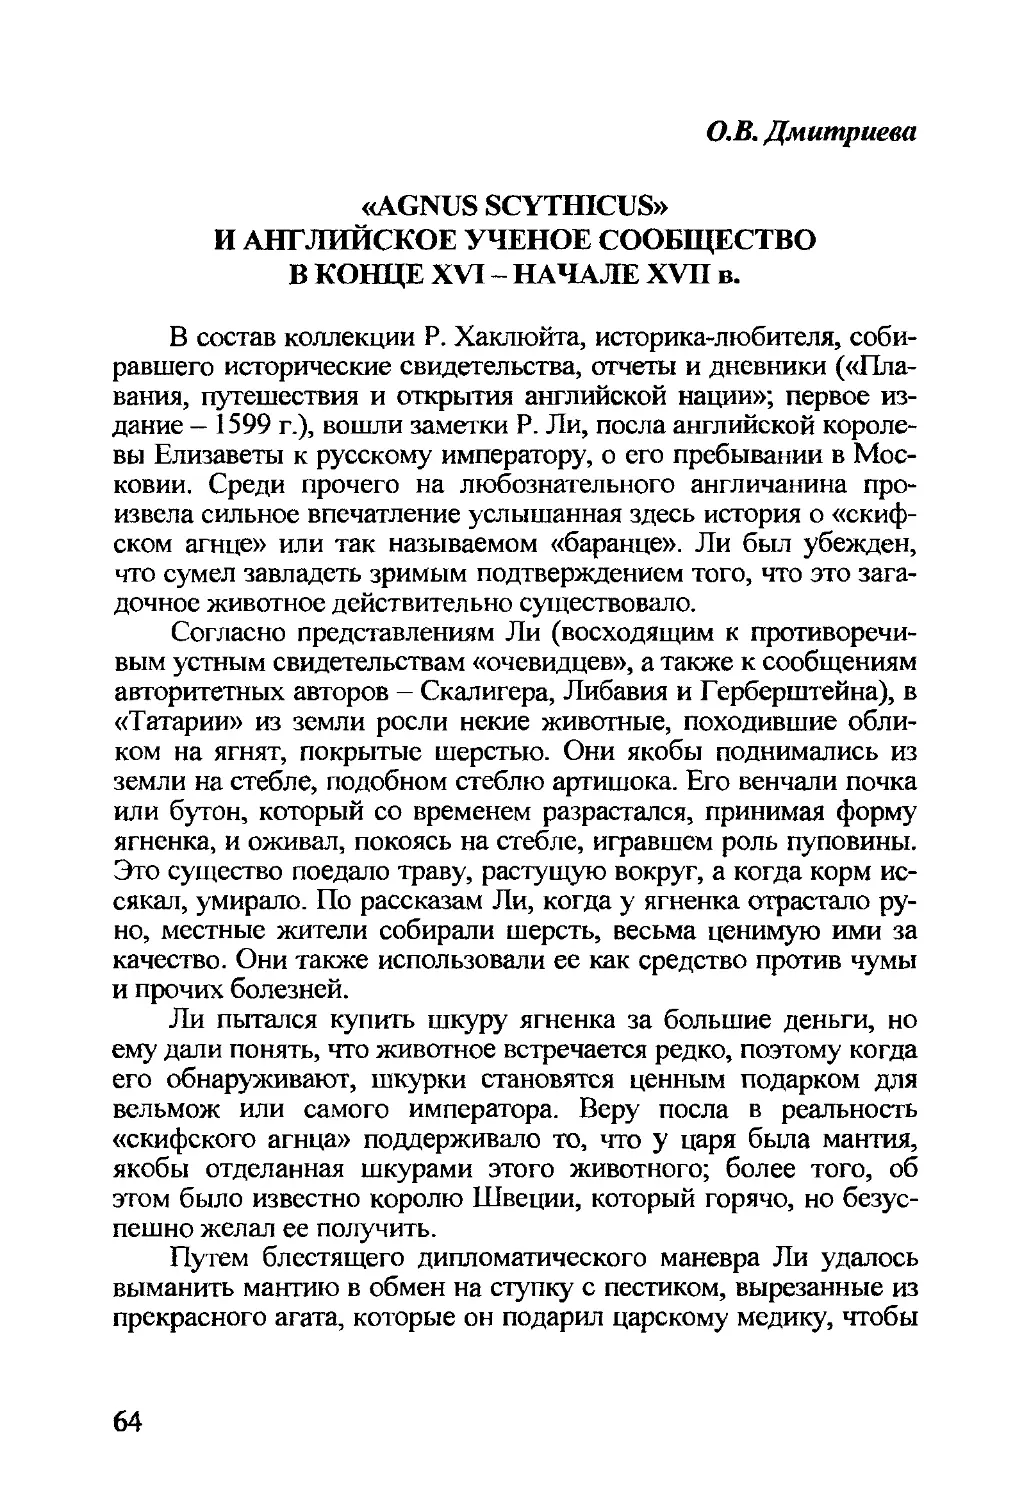 Дмитриева О.В. «Agnus scythicus» и английское ученое сообщество в конце XVI — начале XVII в